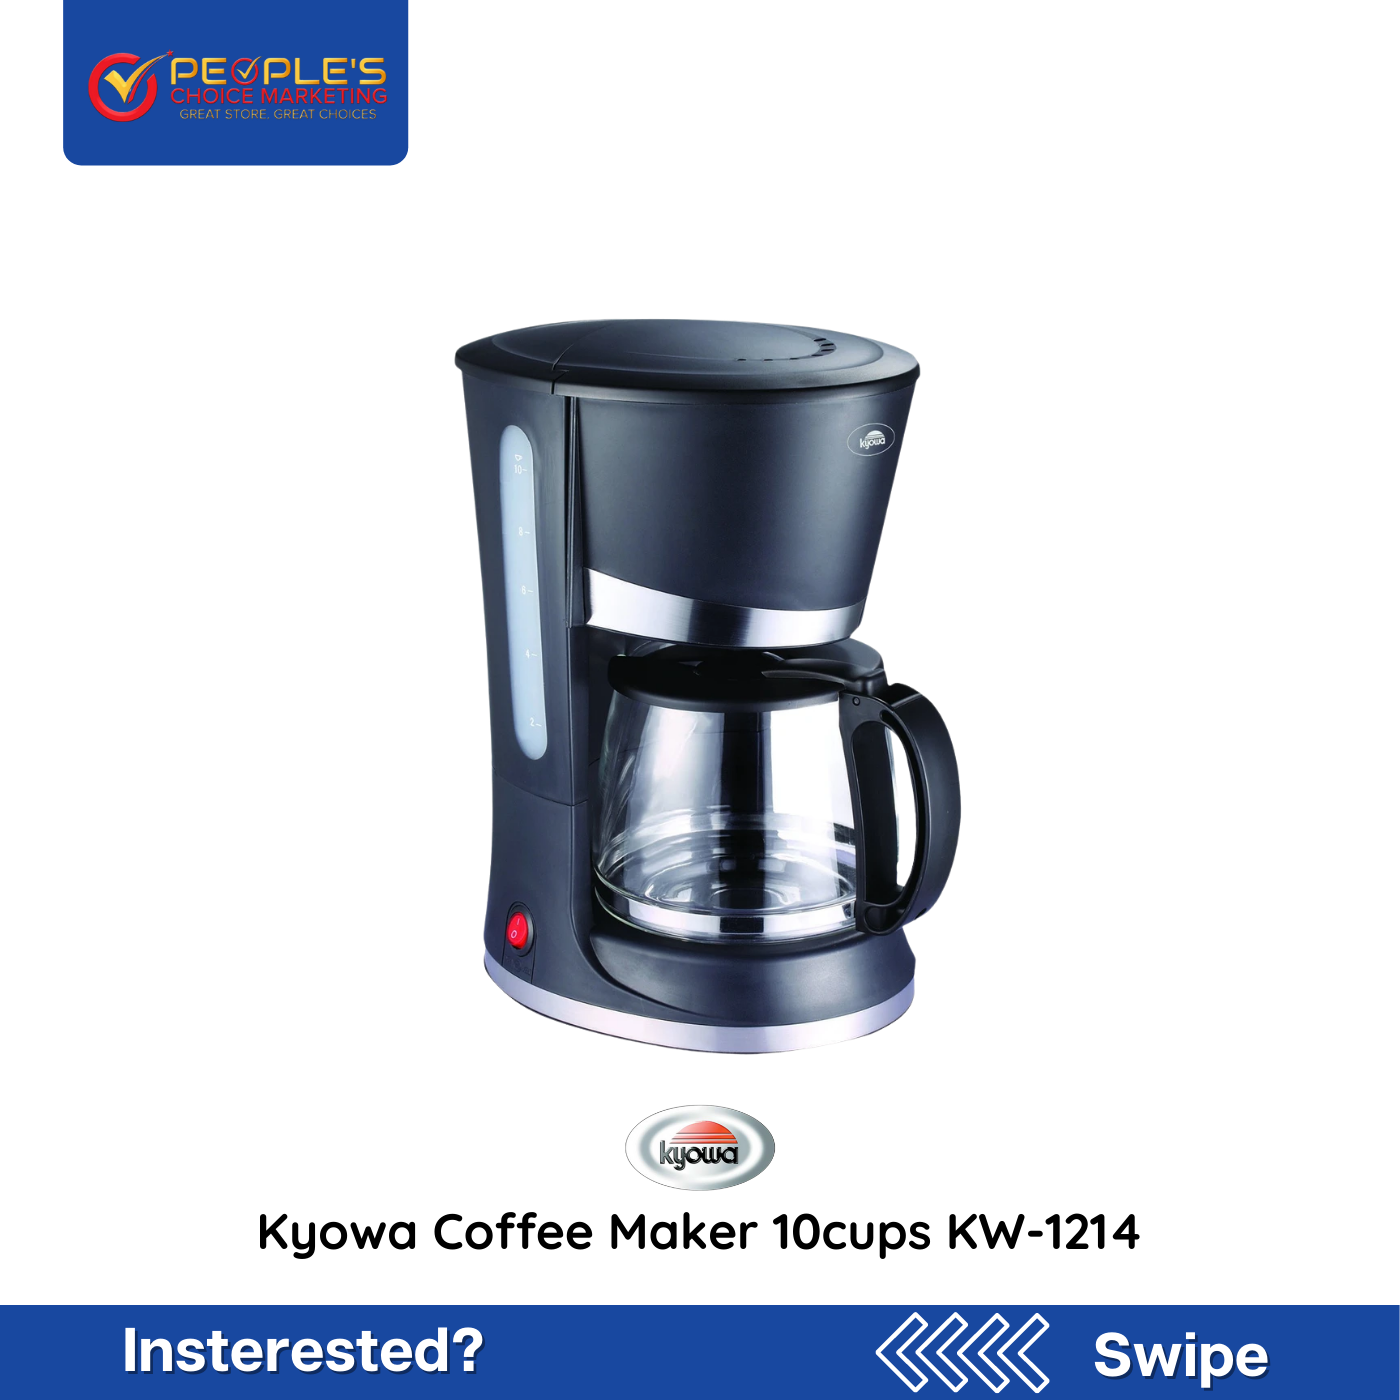 Kyowa Coffee Maker 10cups KW-1214